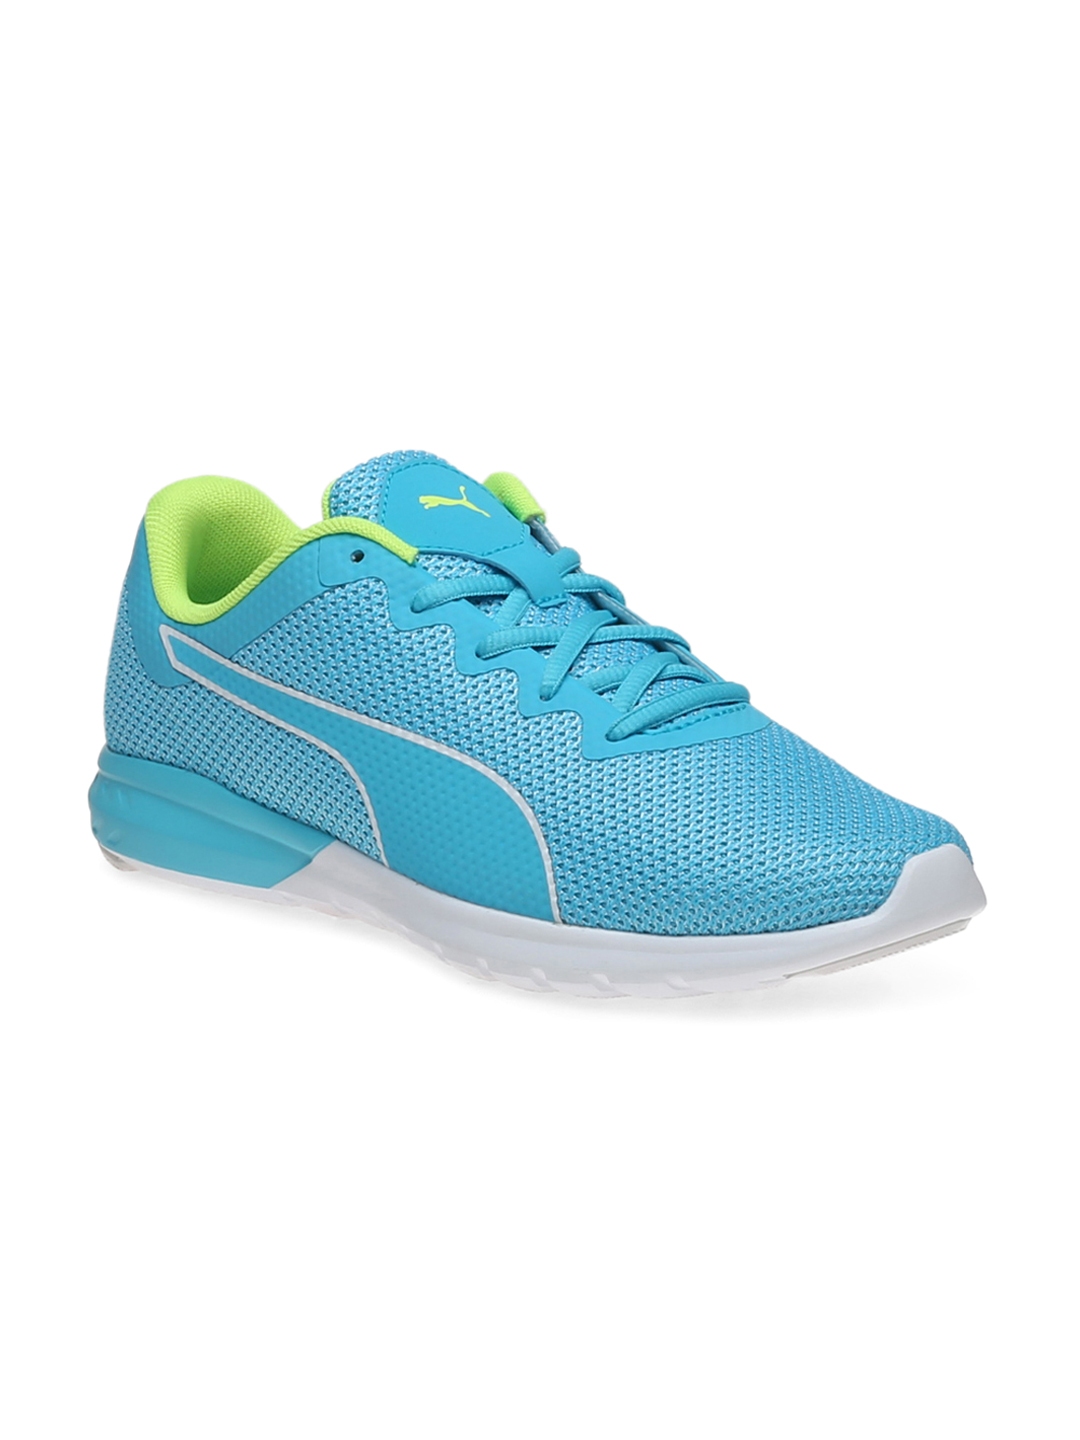 Buy PUMA Women Blue Running Shoes - Sports Shoes for Women 1736609 | Myntra